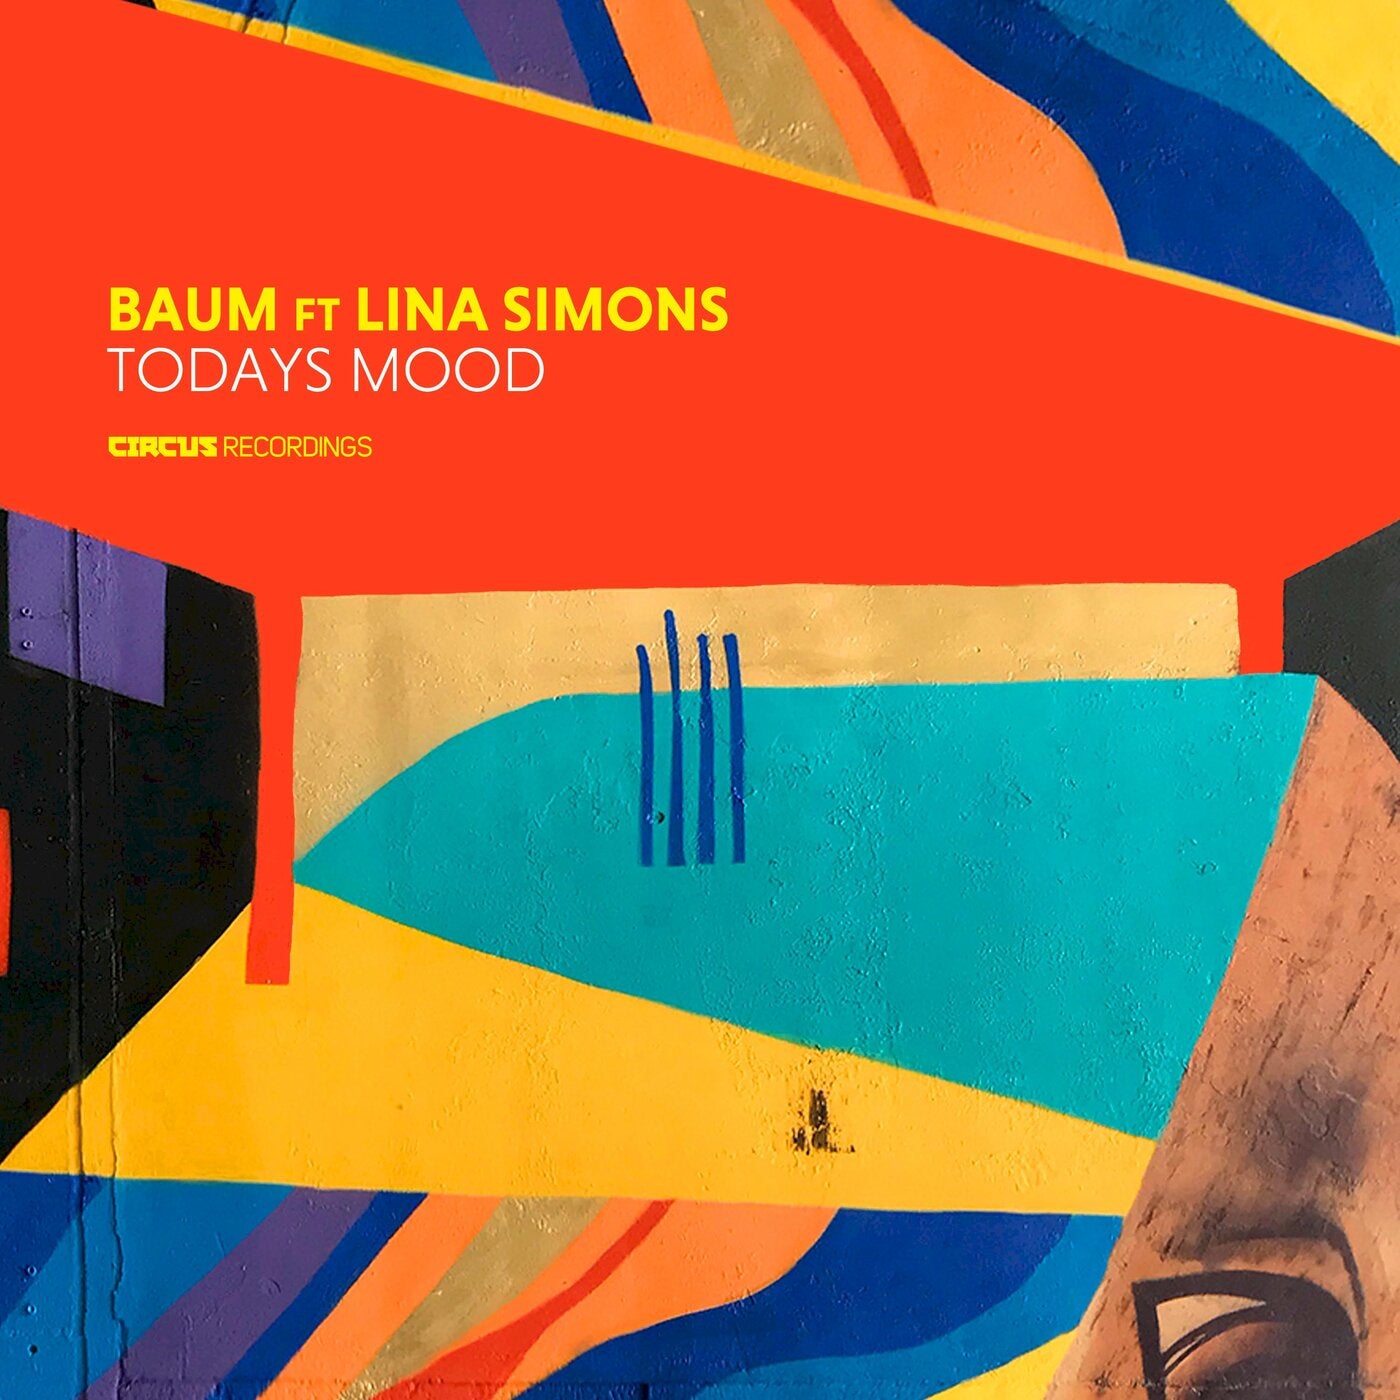 image cover: Baum, Lina Simons - Today's Mood / CIRCUS148